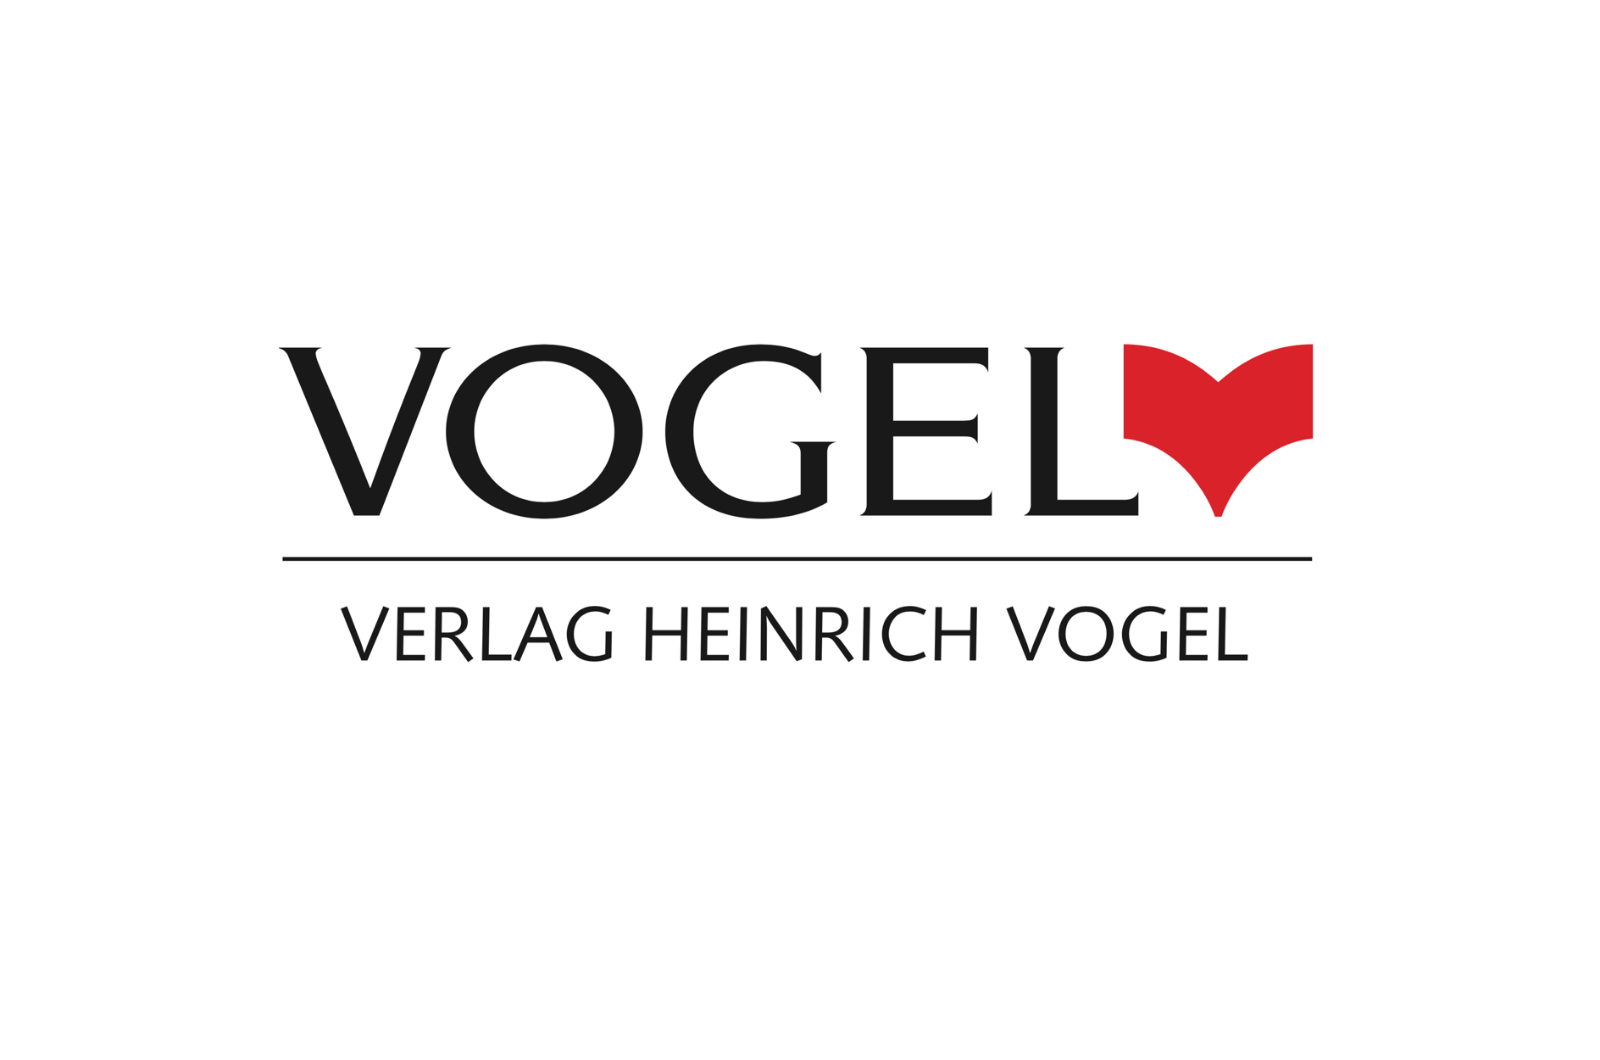 Vogel Verlag Heinrich Vogel